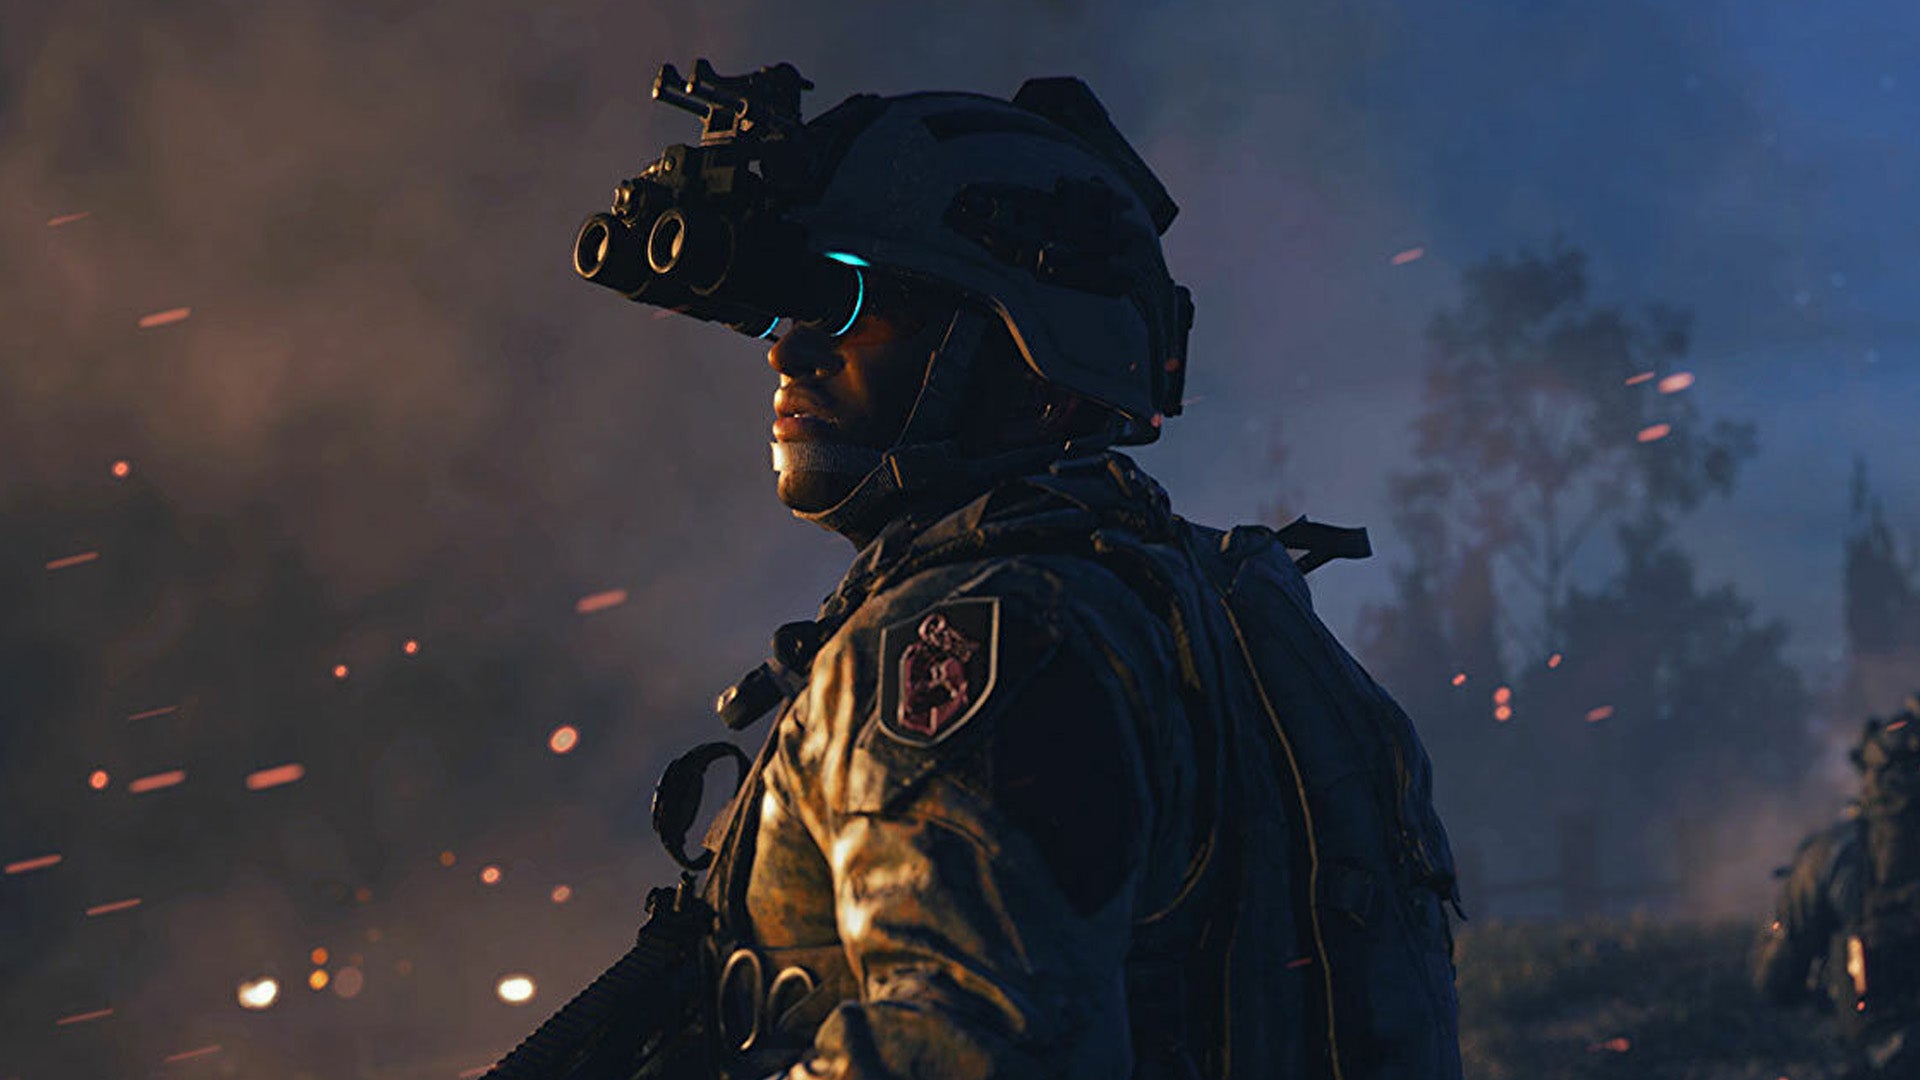 Obrazki dla CoD Modern Warfare 2 miażdży sprzedaż poprzedniej części serii